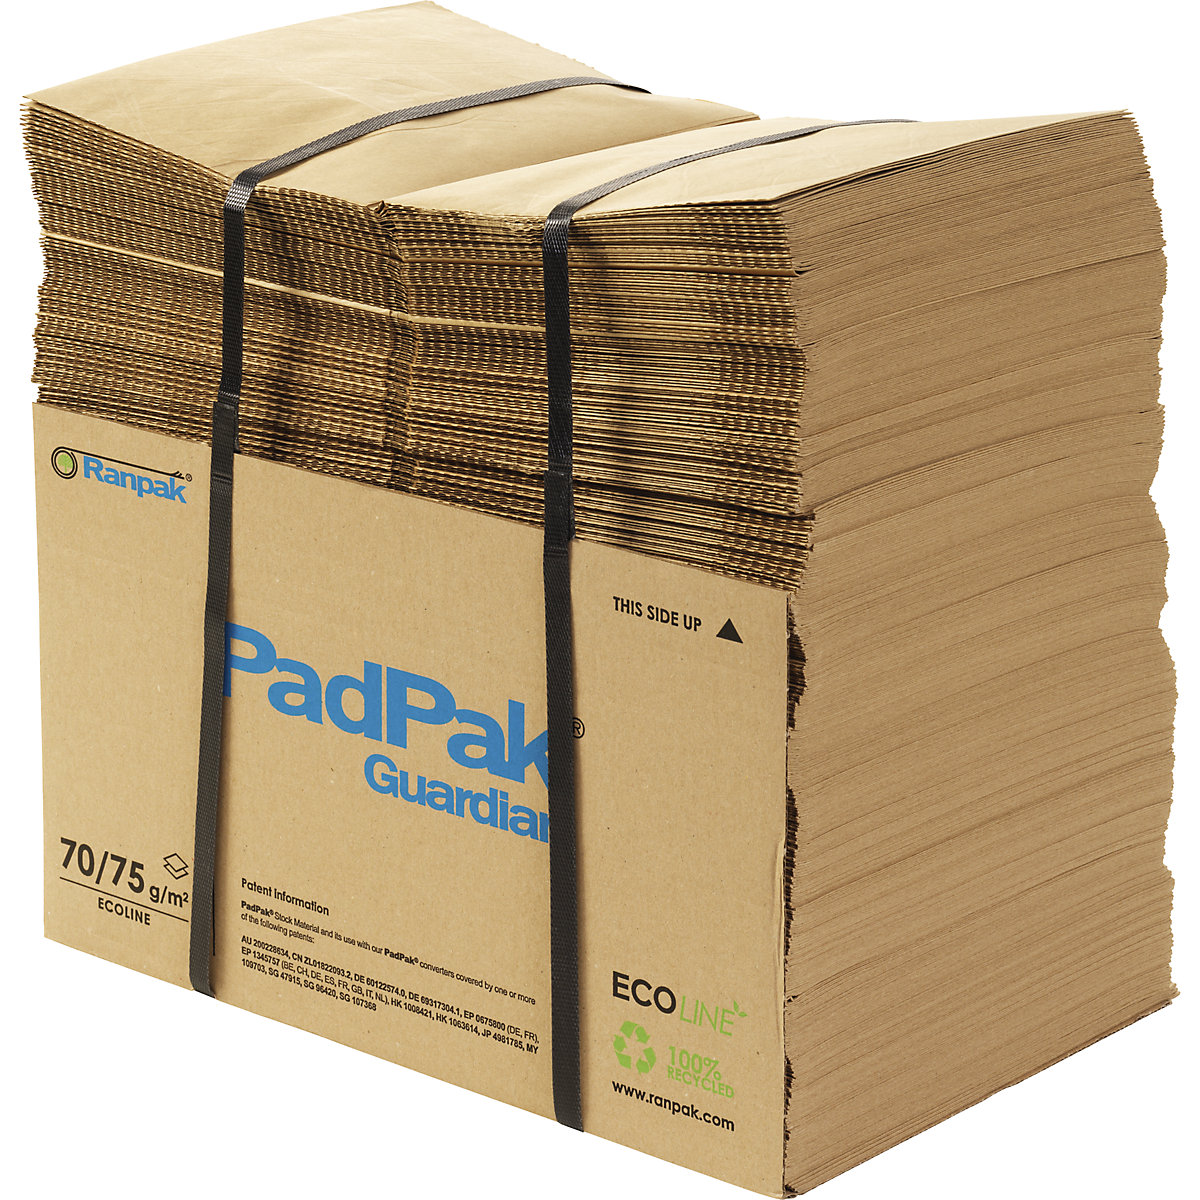 Papier PadPak Guardian, recyclé – terra